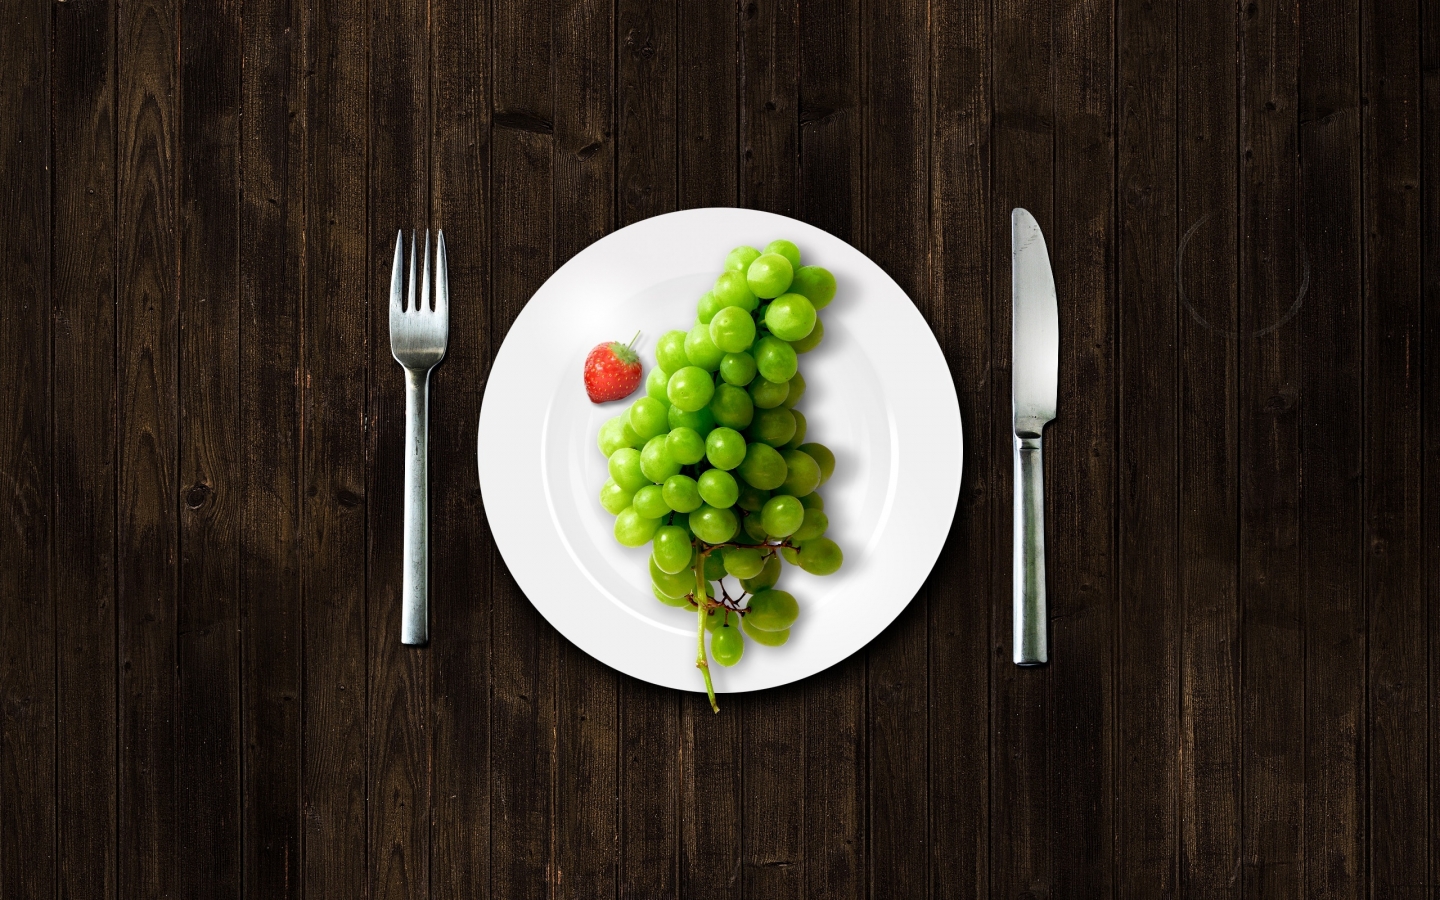 Grape Dinner for 1440 x 900 widescreen resolution